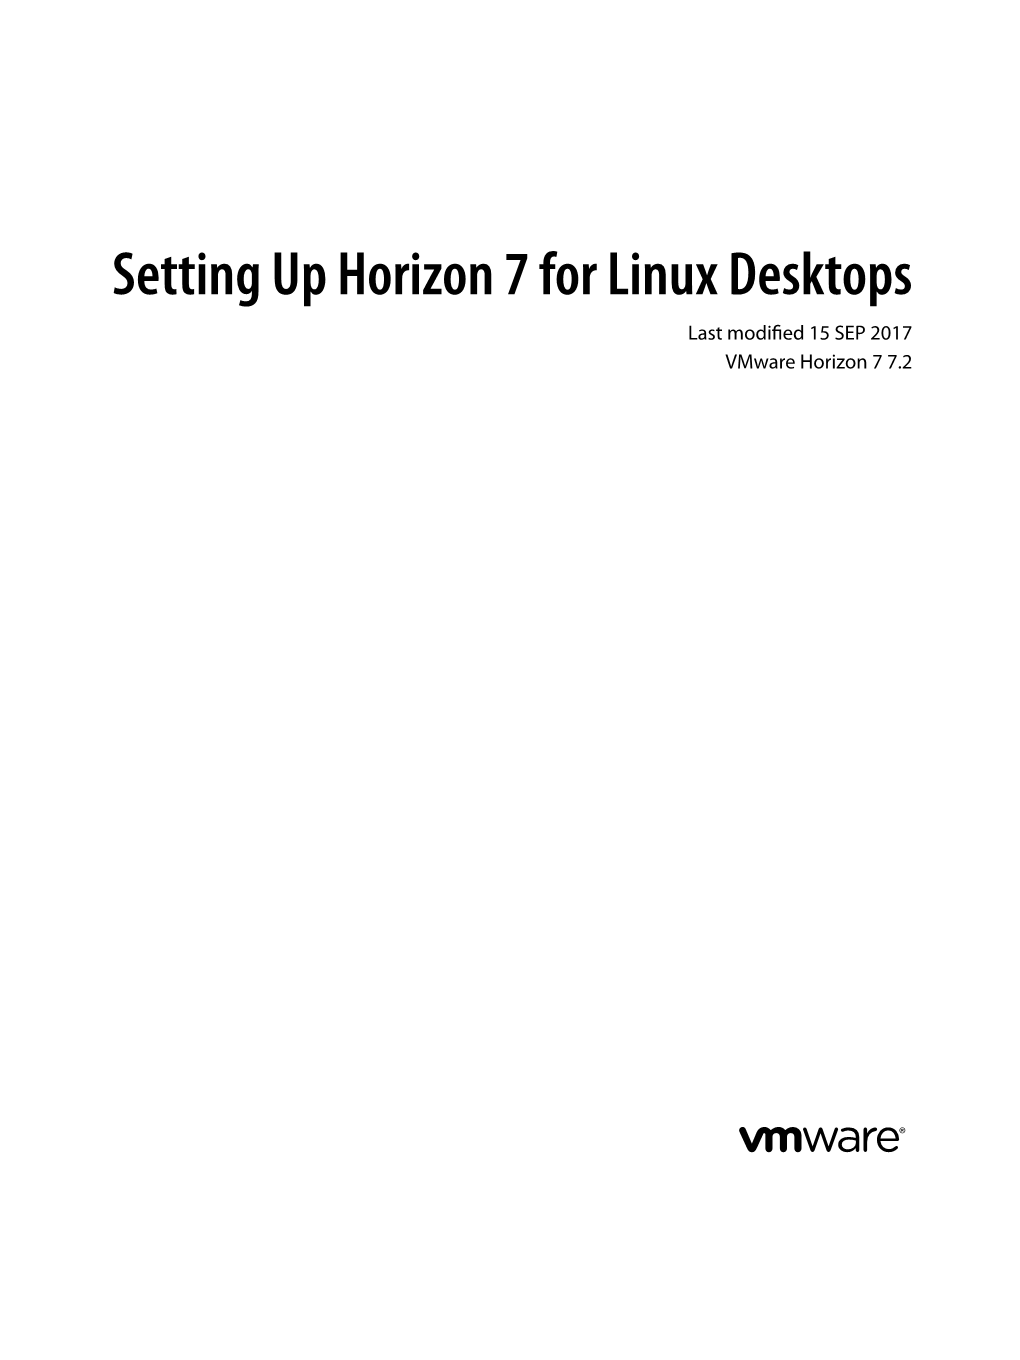 Setting up Horizon 7 for Linux Desktops Last Modified 15 SEP 2017 Vmware Horizon 7 7.2 Setting up Horizon 7 for Linux Desktops